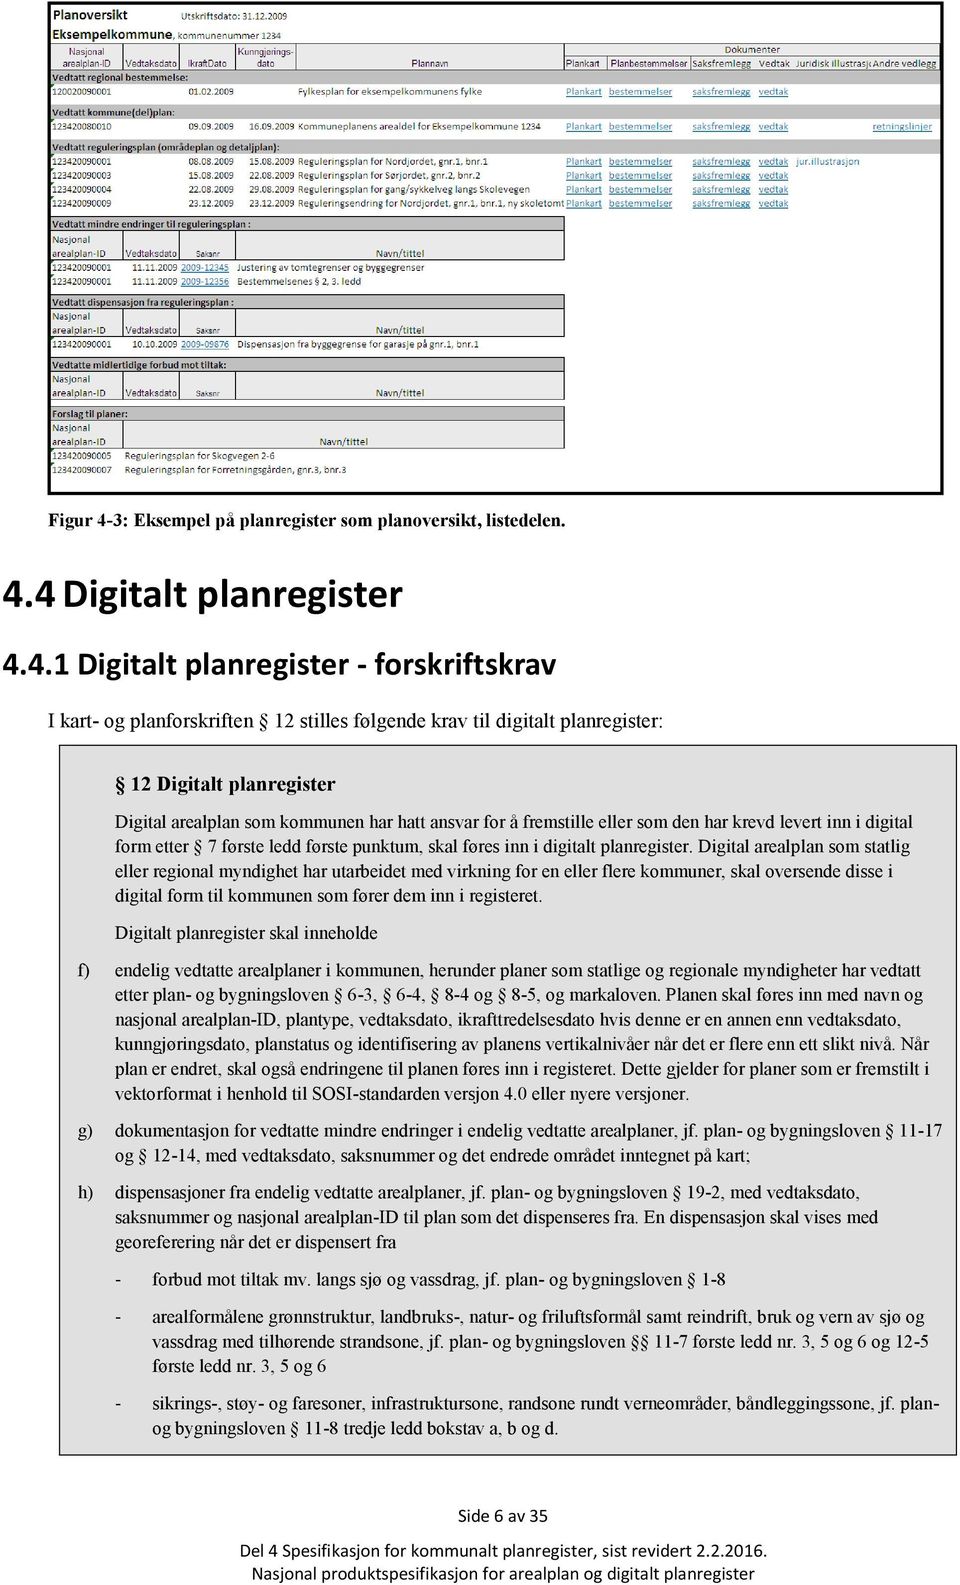 4 Digitalt planregister 4.4.1 Digitalt planregister - forskriftskrav I kart- og planforskriften 12 stilles følgende krav til digitalt planregister: 12 Digitalt planregister Digital arealplan som